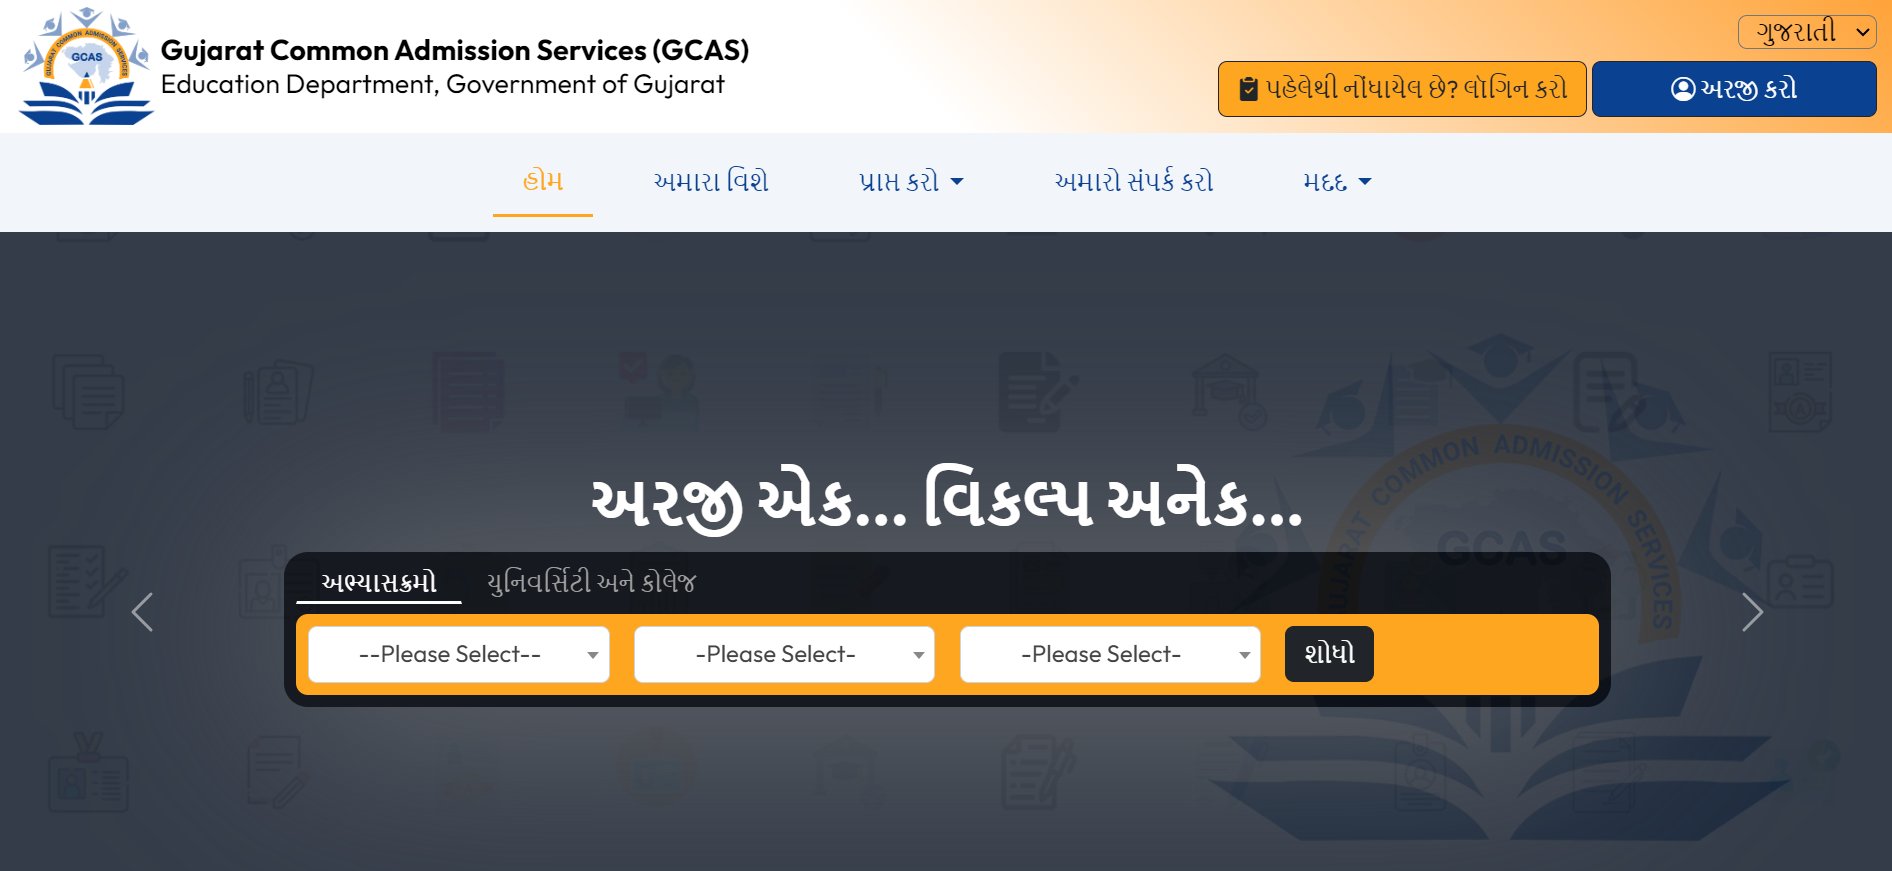 GCAS : ગુજરાતની 15 સરકારી યુનિવર્સિટીમાં પ્રવેશ માટેનું પ્લેટફોર્મ